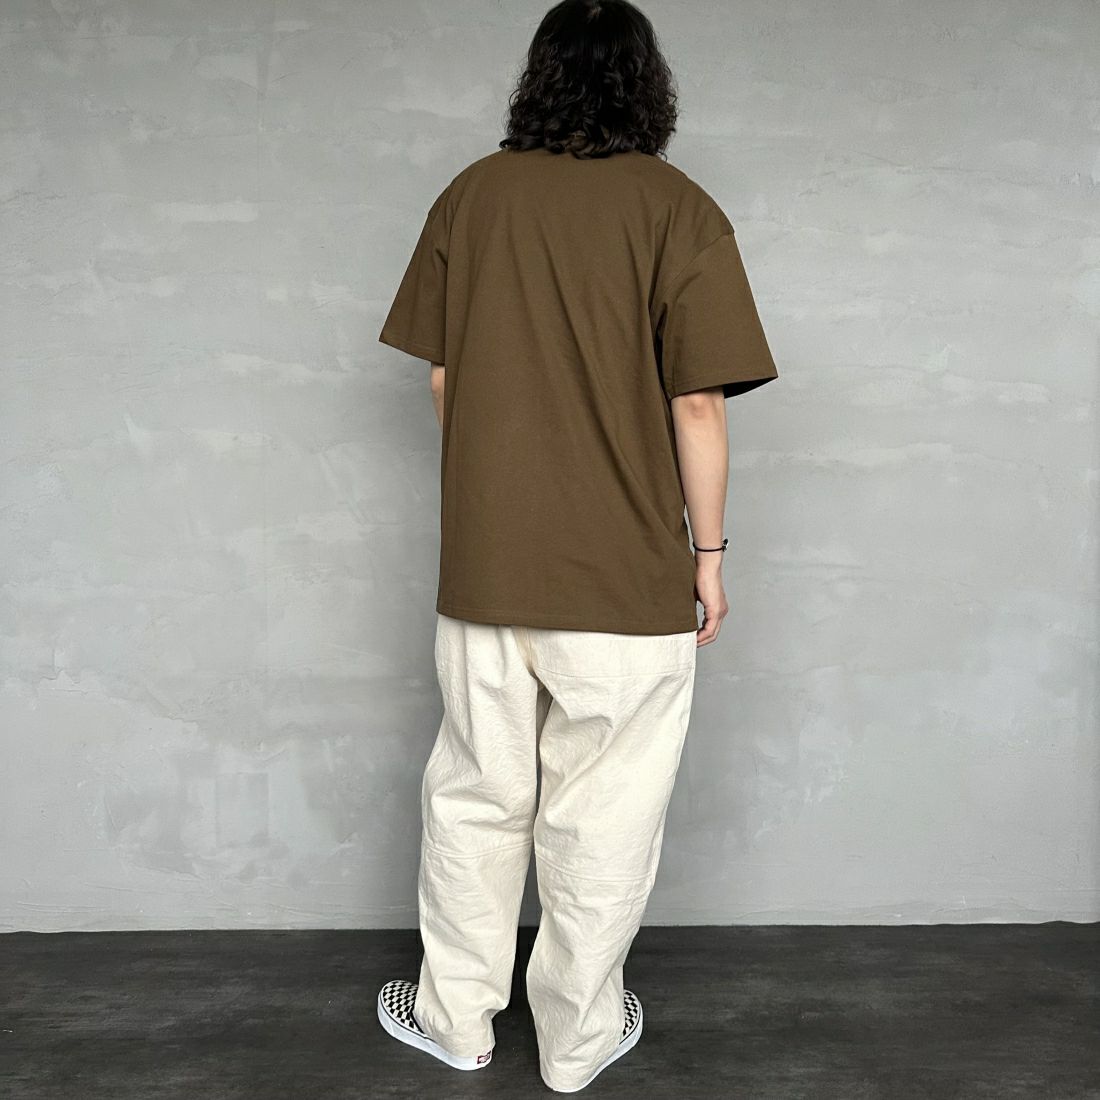 carhartt WIP [カーハートダブリューアイピー] ショートスリーブアメリカンスクリプトTシャツ [I029956] LUMBER &&モデル身長：173cm 着用サイズ：L&&